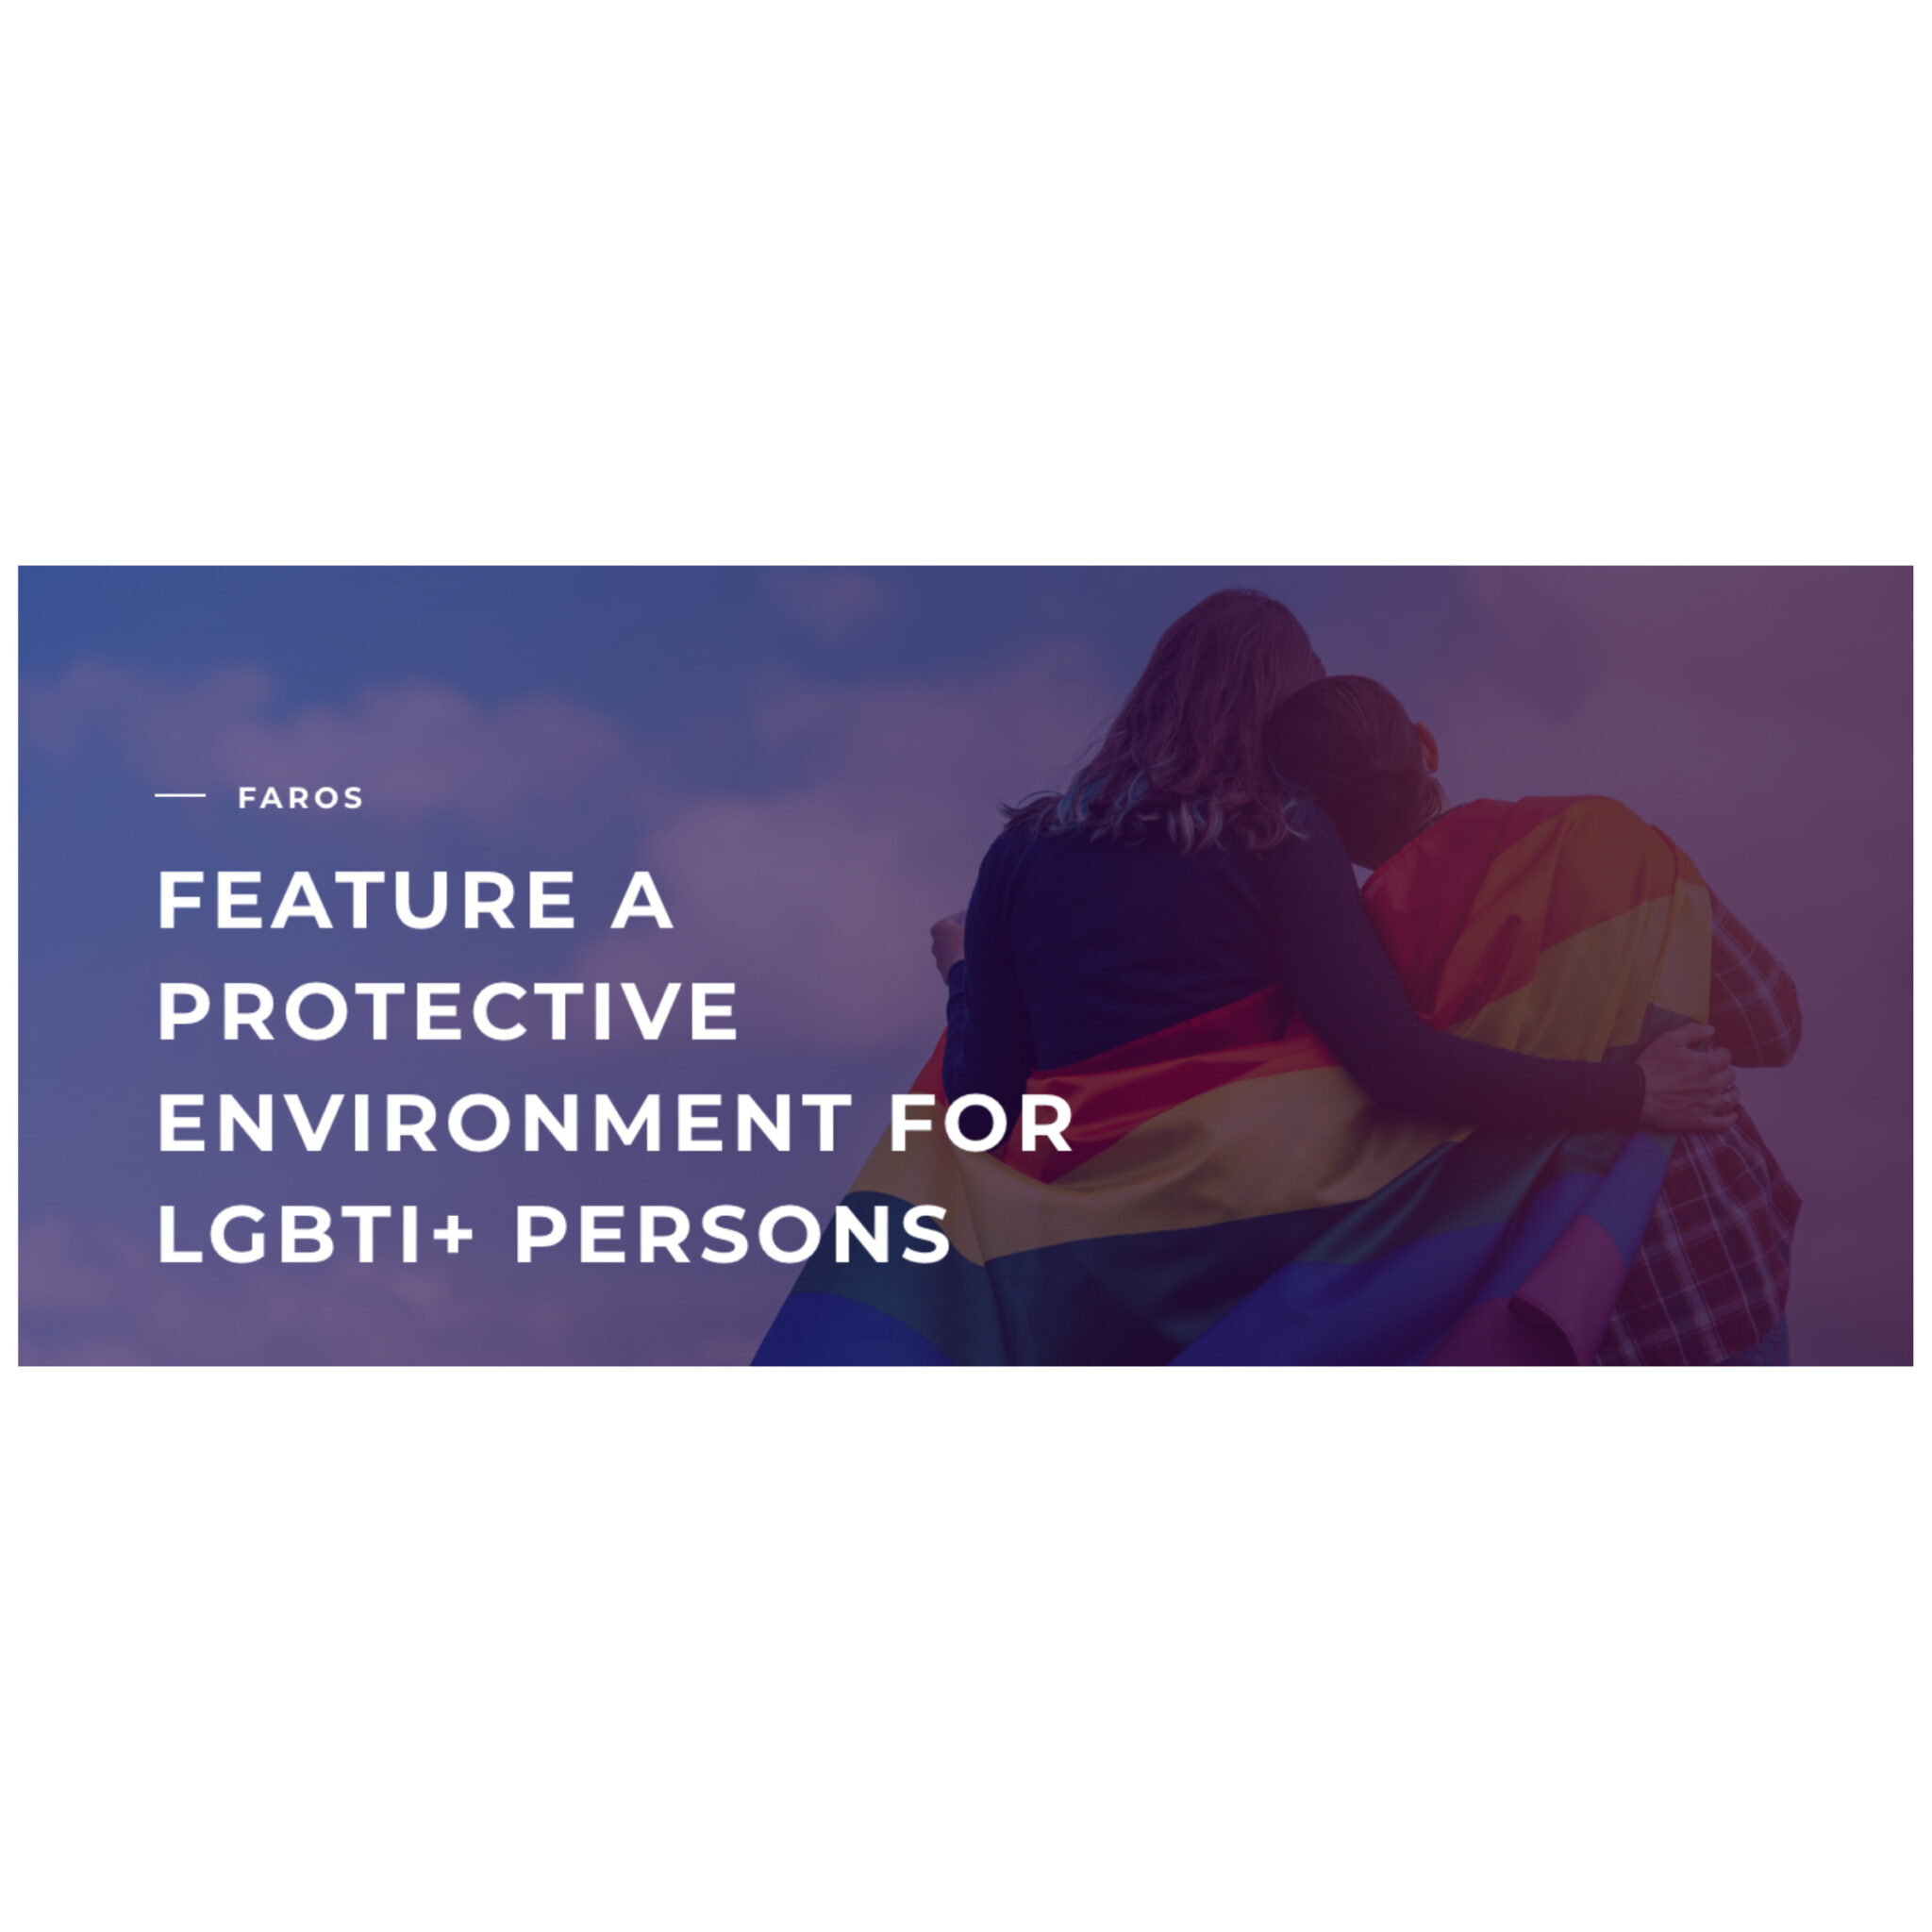 Εικόνα για το άρθρο “ΛΟΑΤΚΙ+ πρόσβαση στην υγεία: σεμινάριο στα πλαίσια του προγράμματος FAROS”